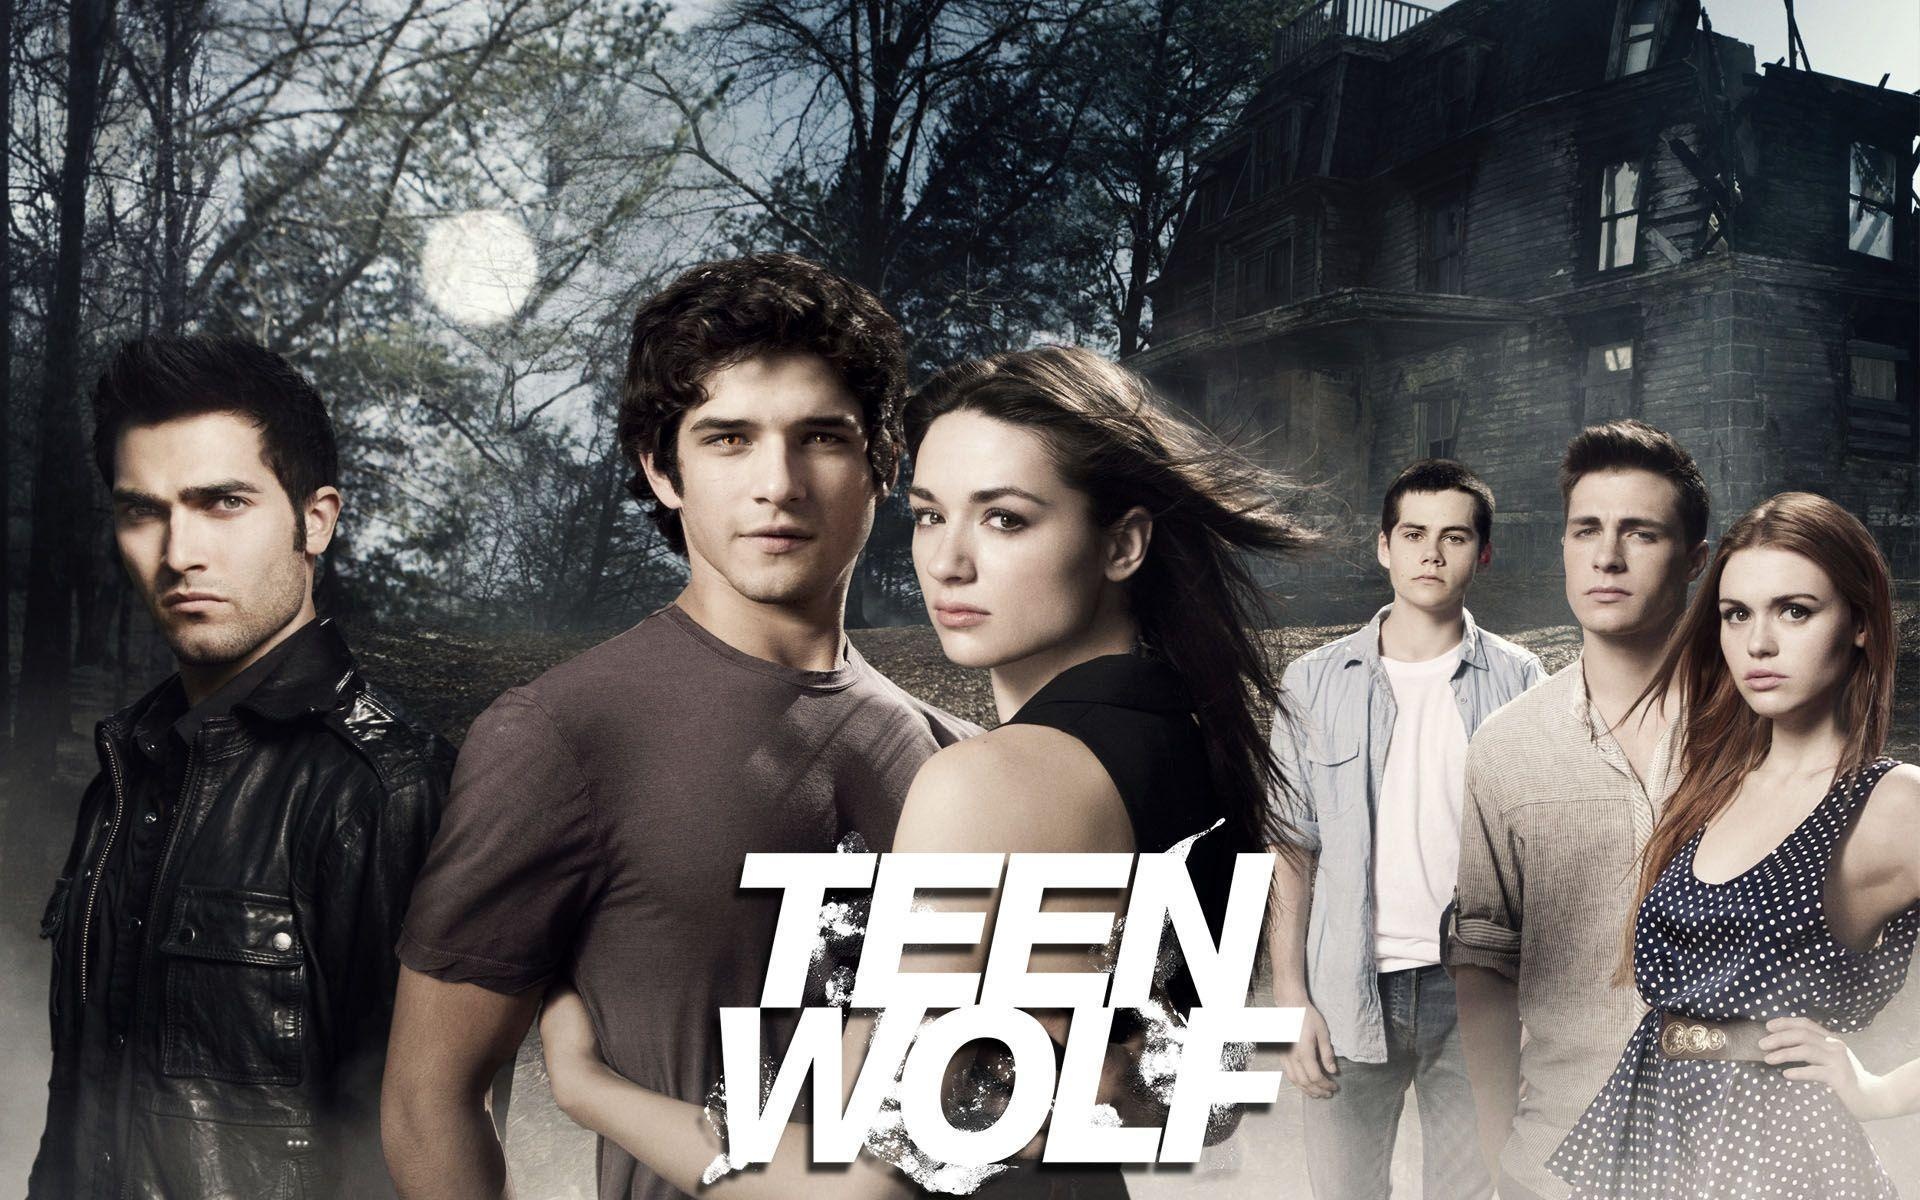 Teen Wolf wallpapers, Fan-favorite show, Mysterious werewolf mythology, Teen angst, 1920x1200 HD Desktop